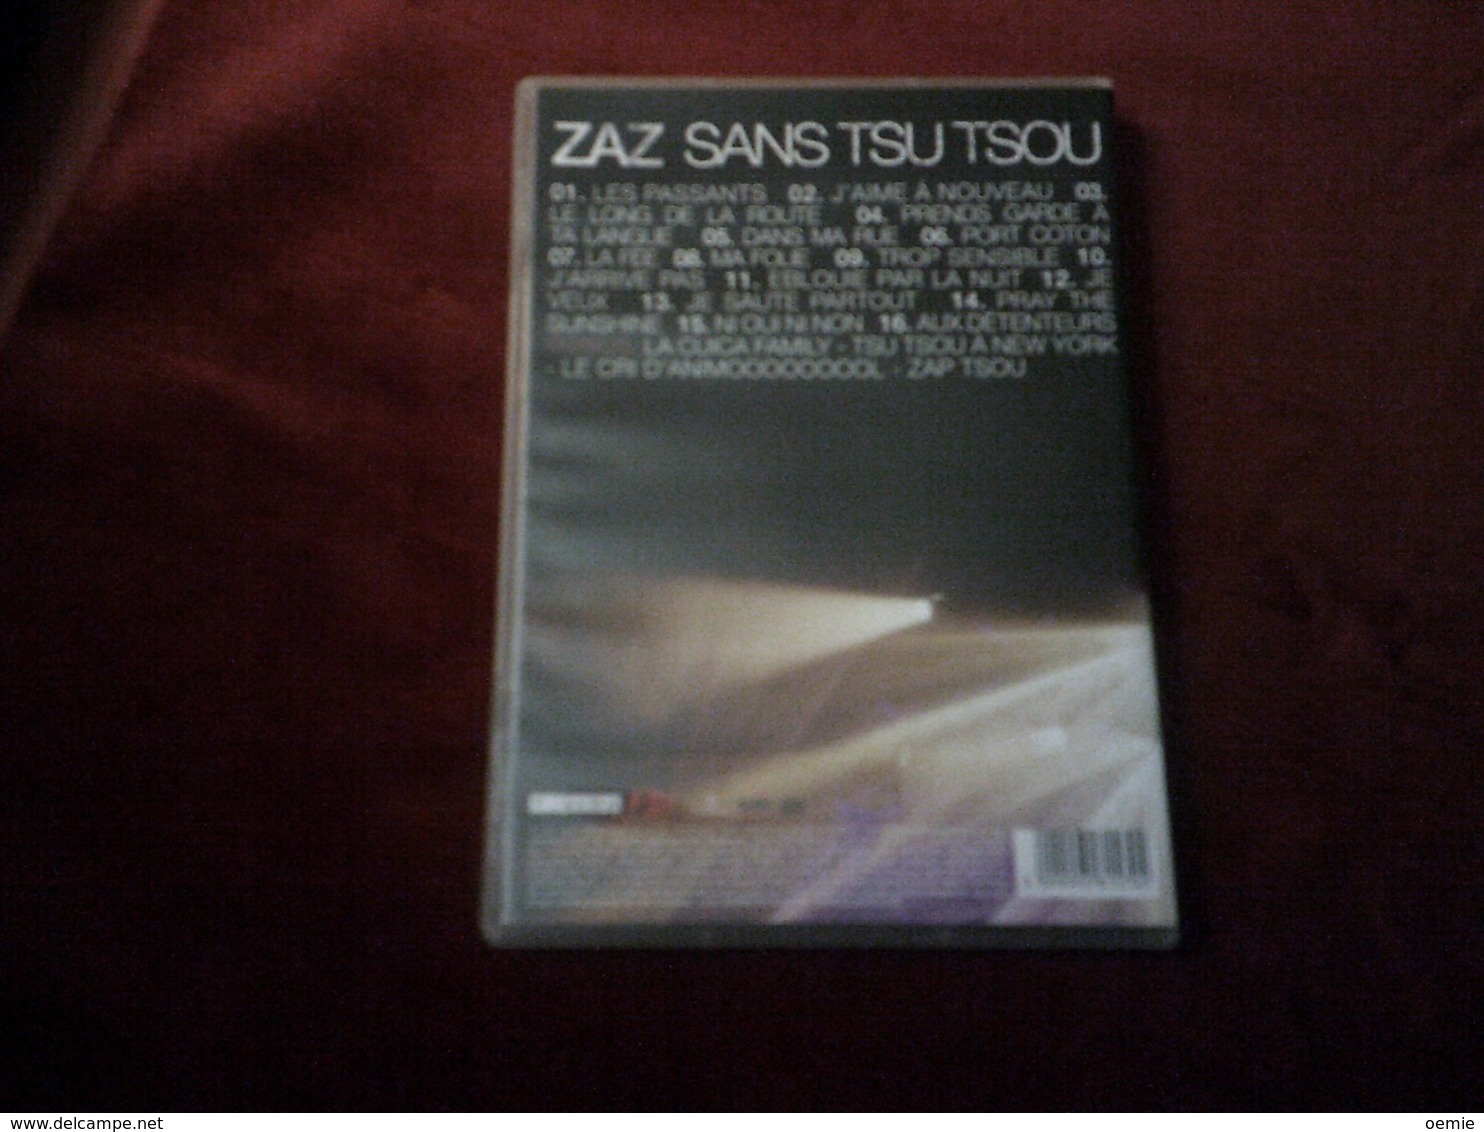 ZAZ ° SANS TSU  TSOU   °° DVD 16 TITRES + BONUS - Conciertos Y Música